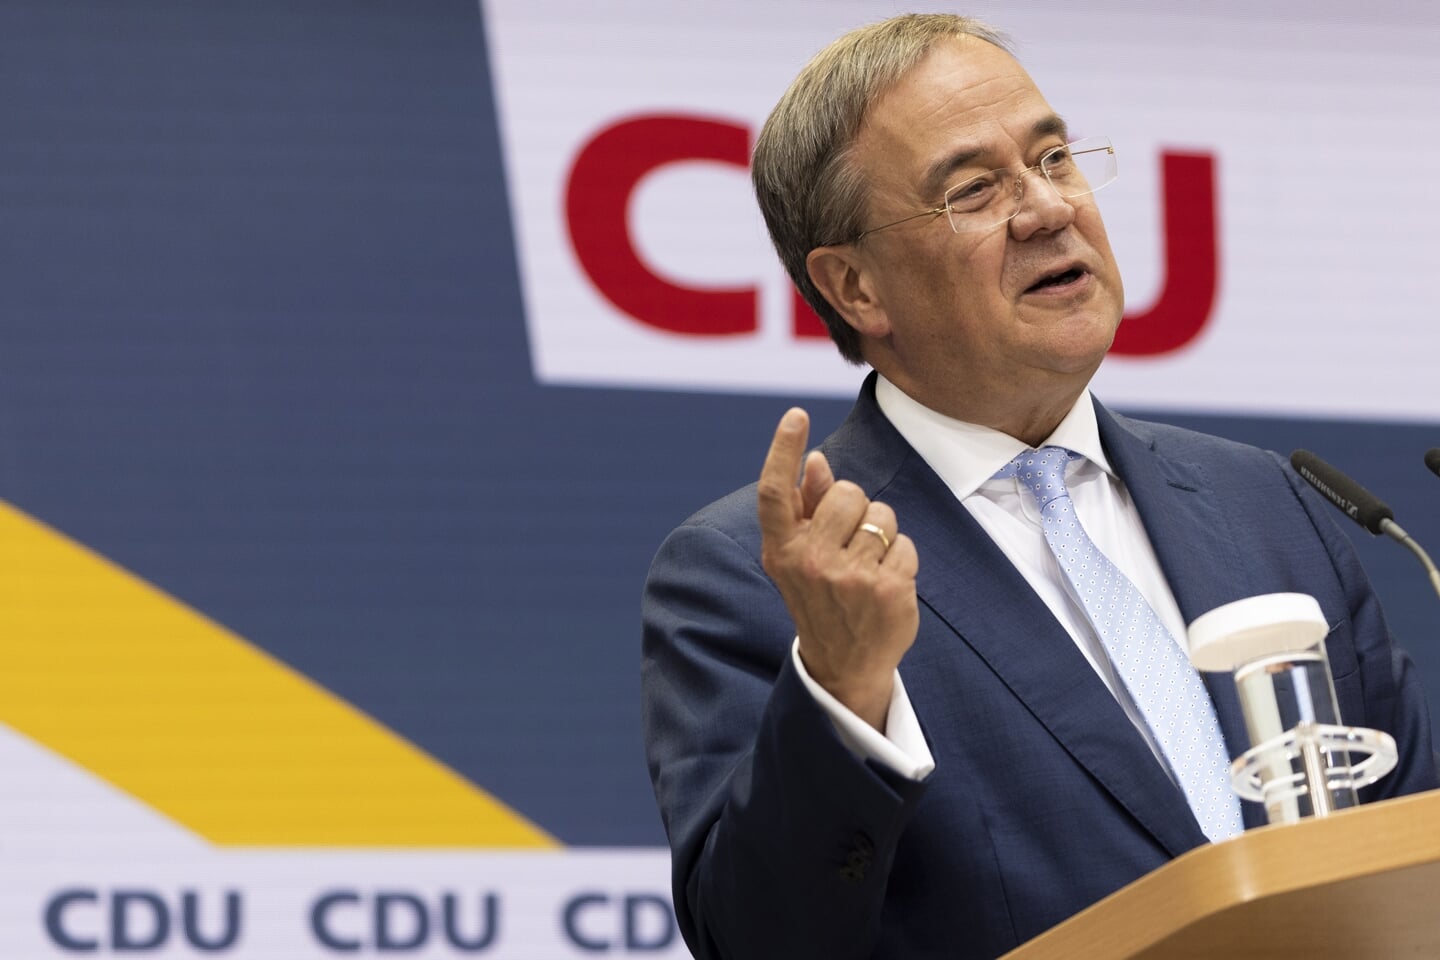 CDU/CSU lijsttrekker Armin Laschet zag maandag nog wel een optie om bondskanselier te worden, in een 'toekomstcoalitie' van de christendemocraten met de liberale FDP en de Groenen.